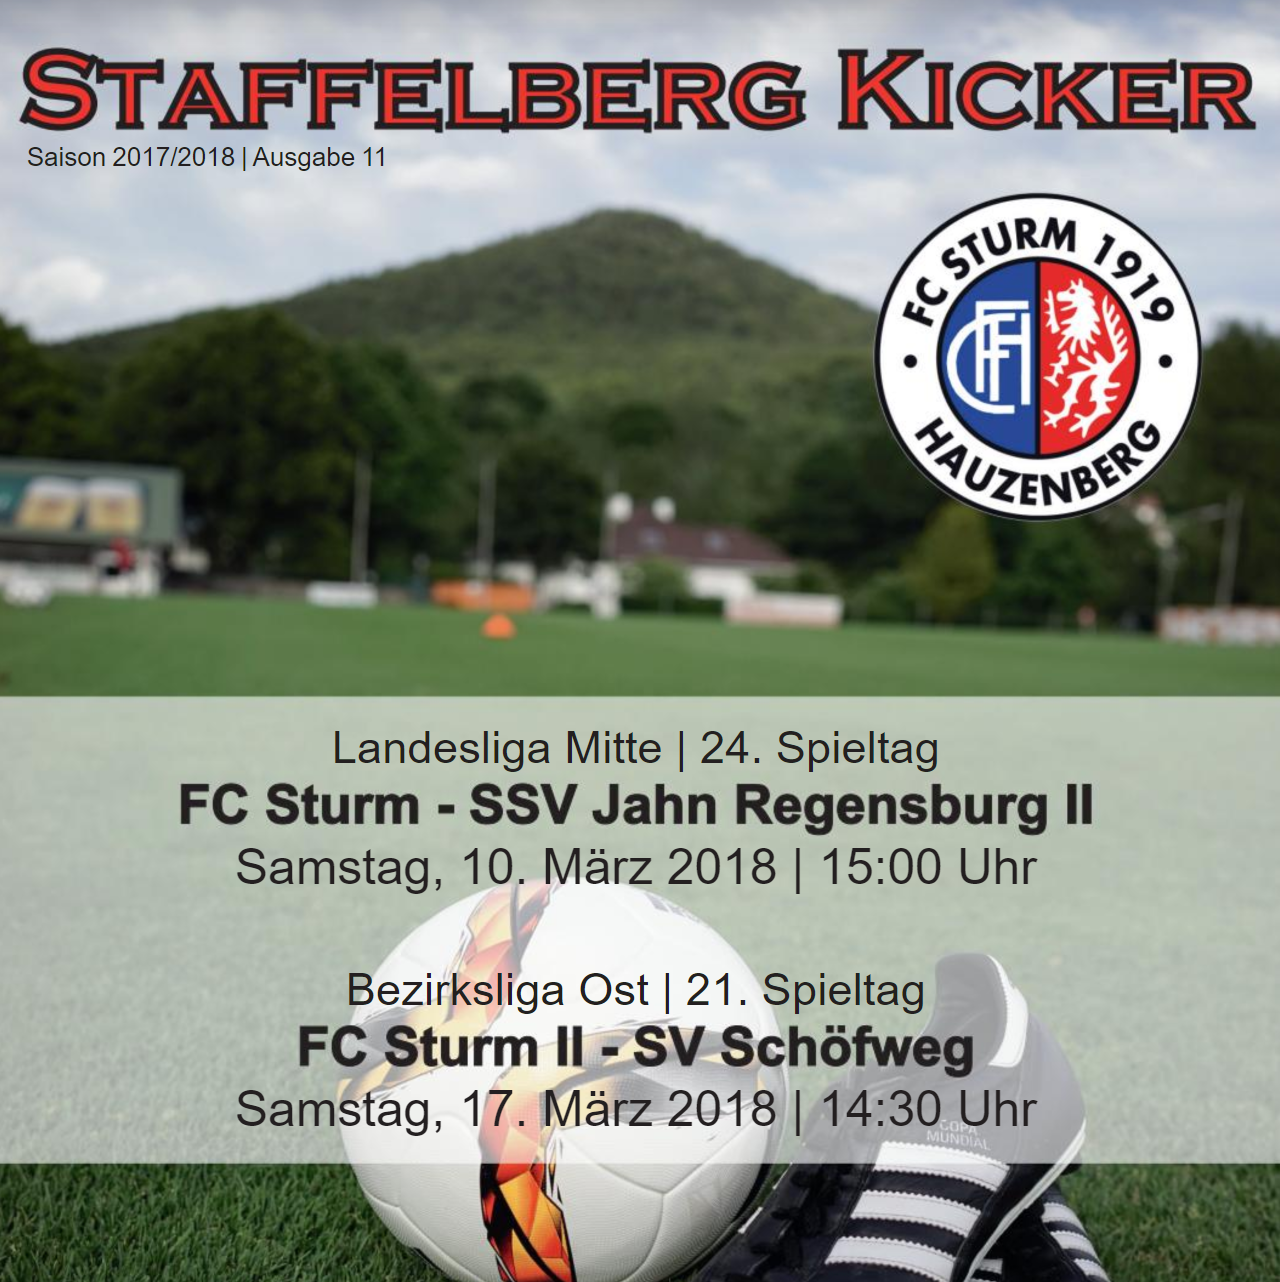 Staffelberg Kicker #11 ist online